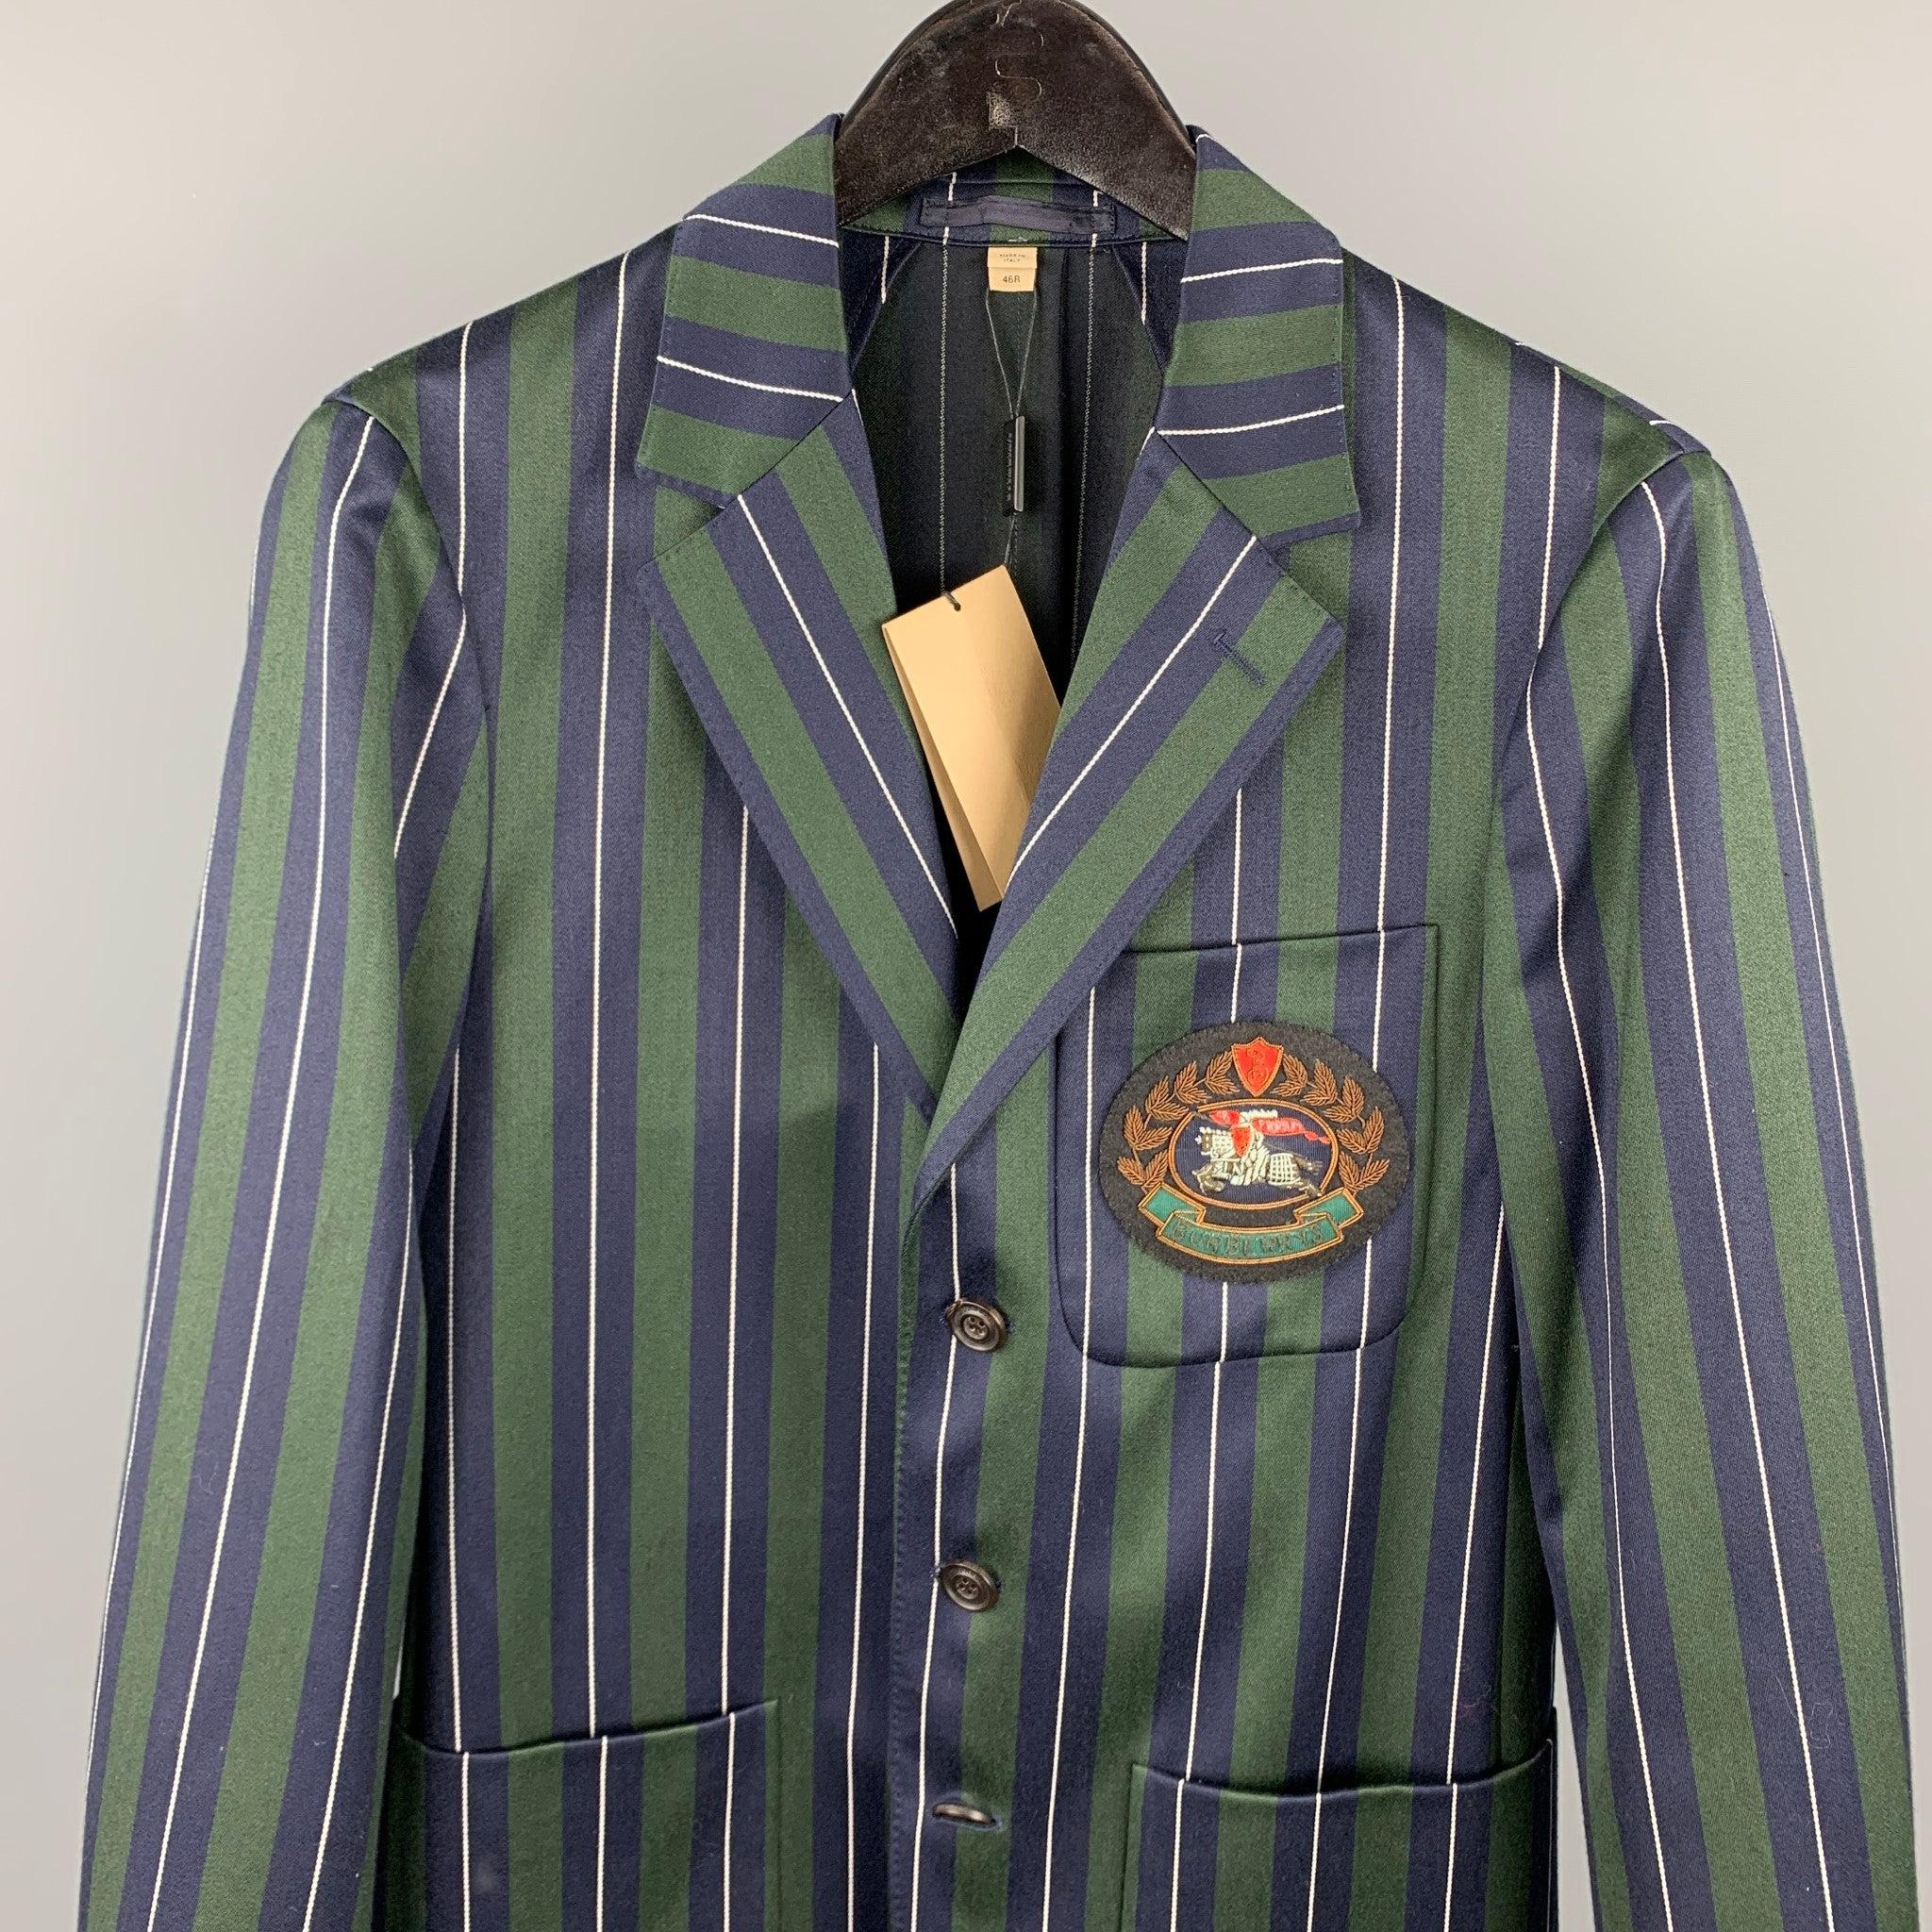 BURBERRY
Le costume est en laine/coton à rayures verticales vertes et marines, avec une demi-doublure et un écusson brodé sur le devant. Il se compose d'un manteau de sport à trois boutons, à revers échancré, et d'un pantalon assorti à devant plat.